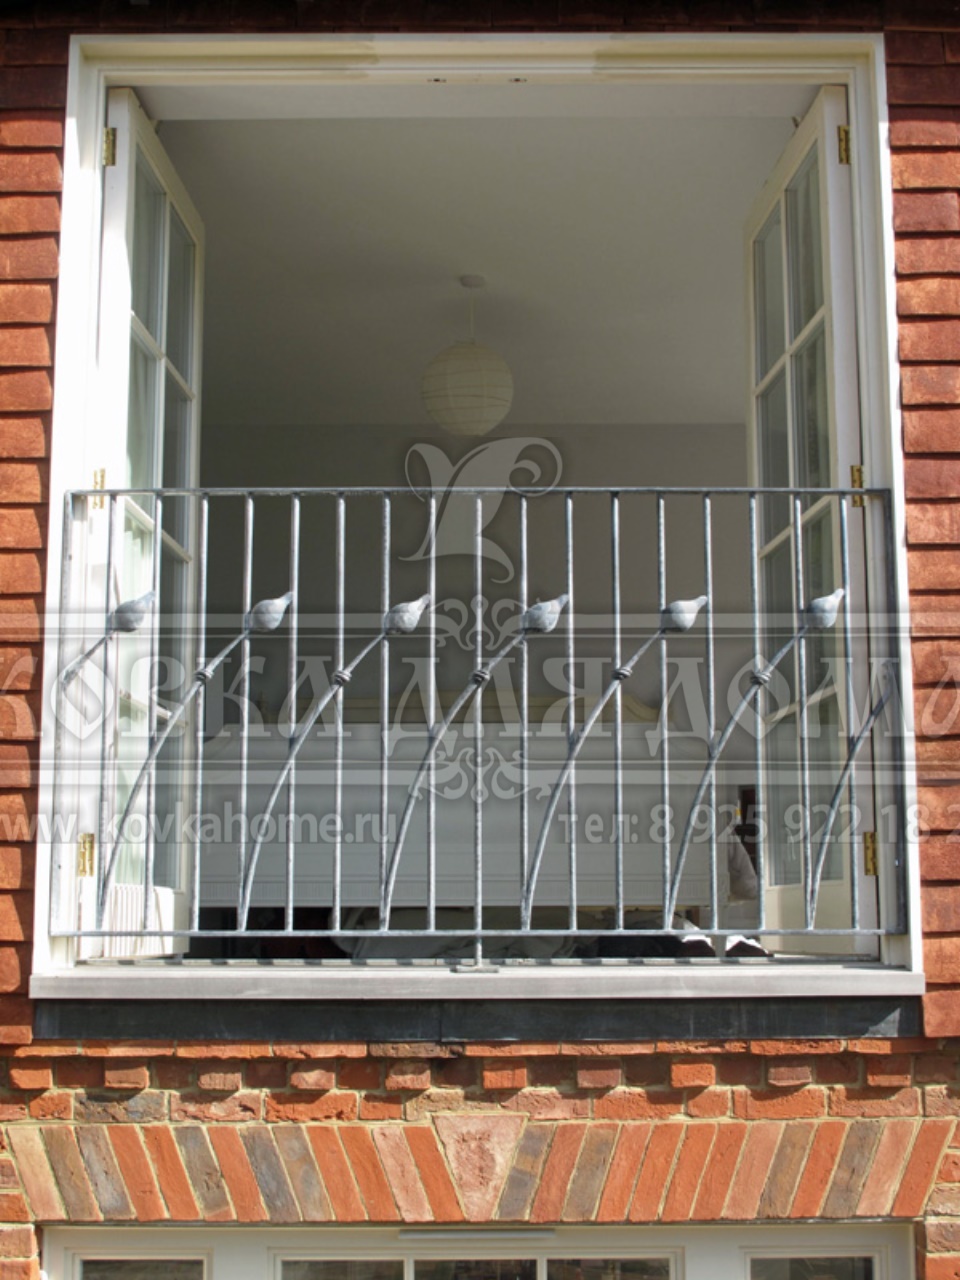 Кованая решетка для балкона с элементами художественной ковки заказать с установкой в Москве и области по тел: +7 (916) 536-56-50